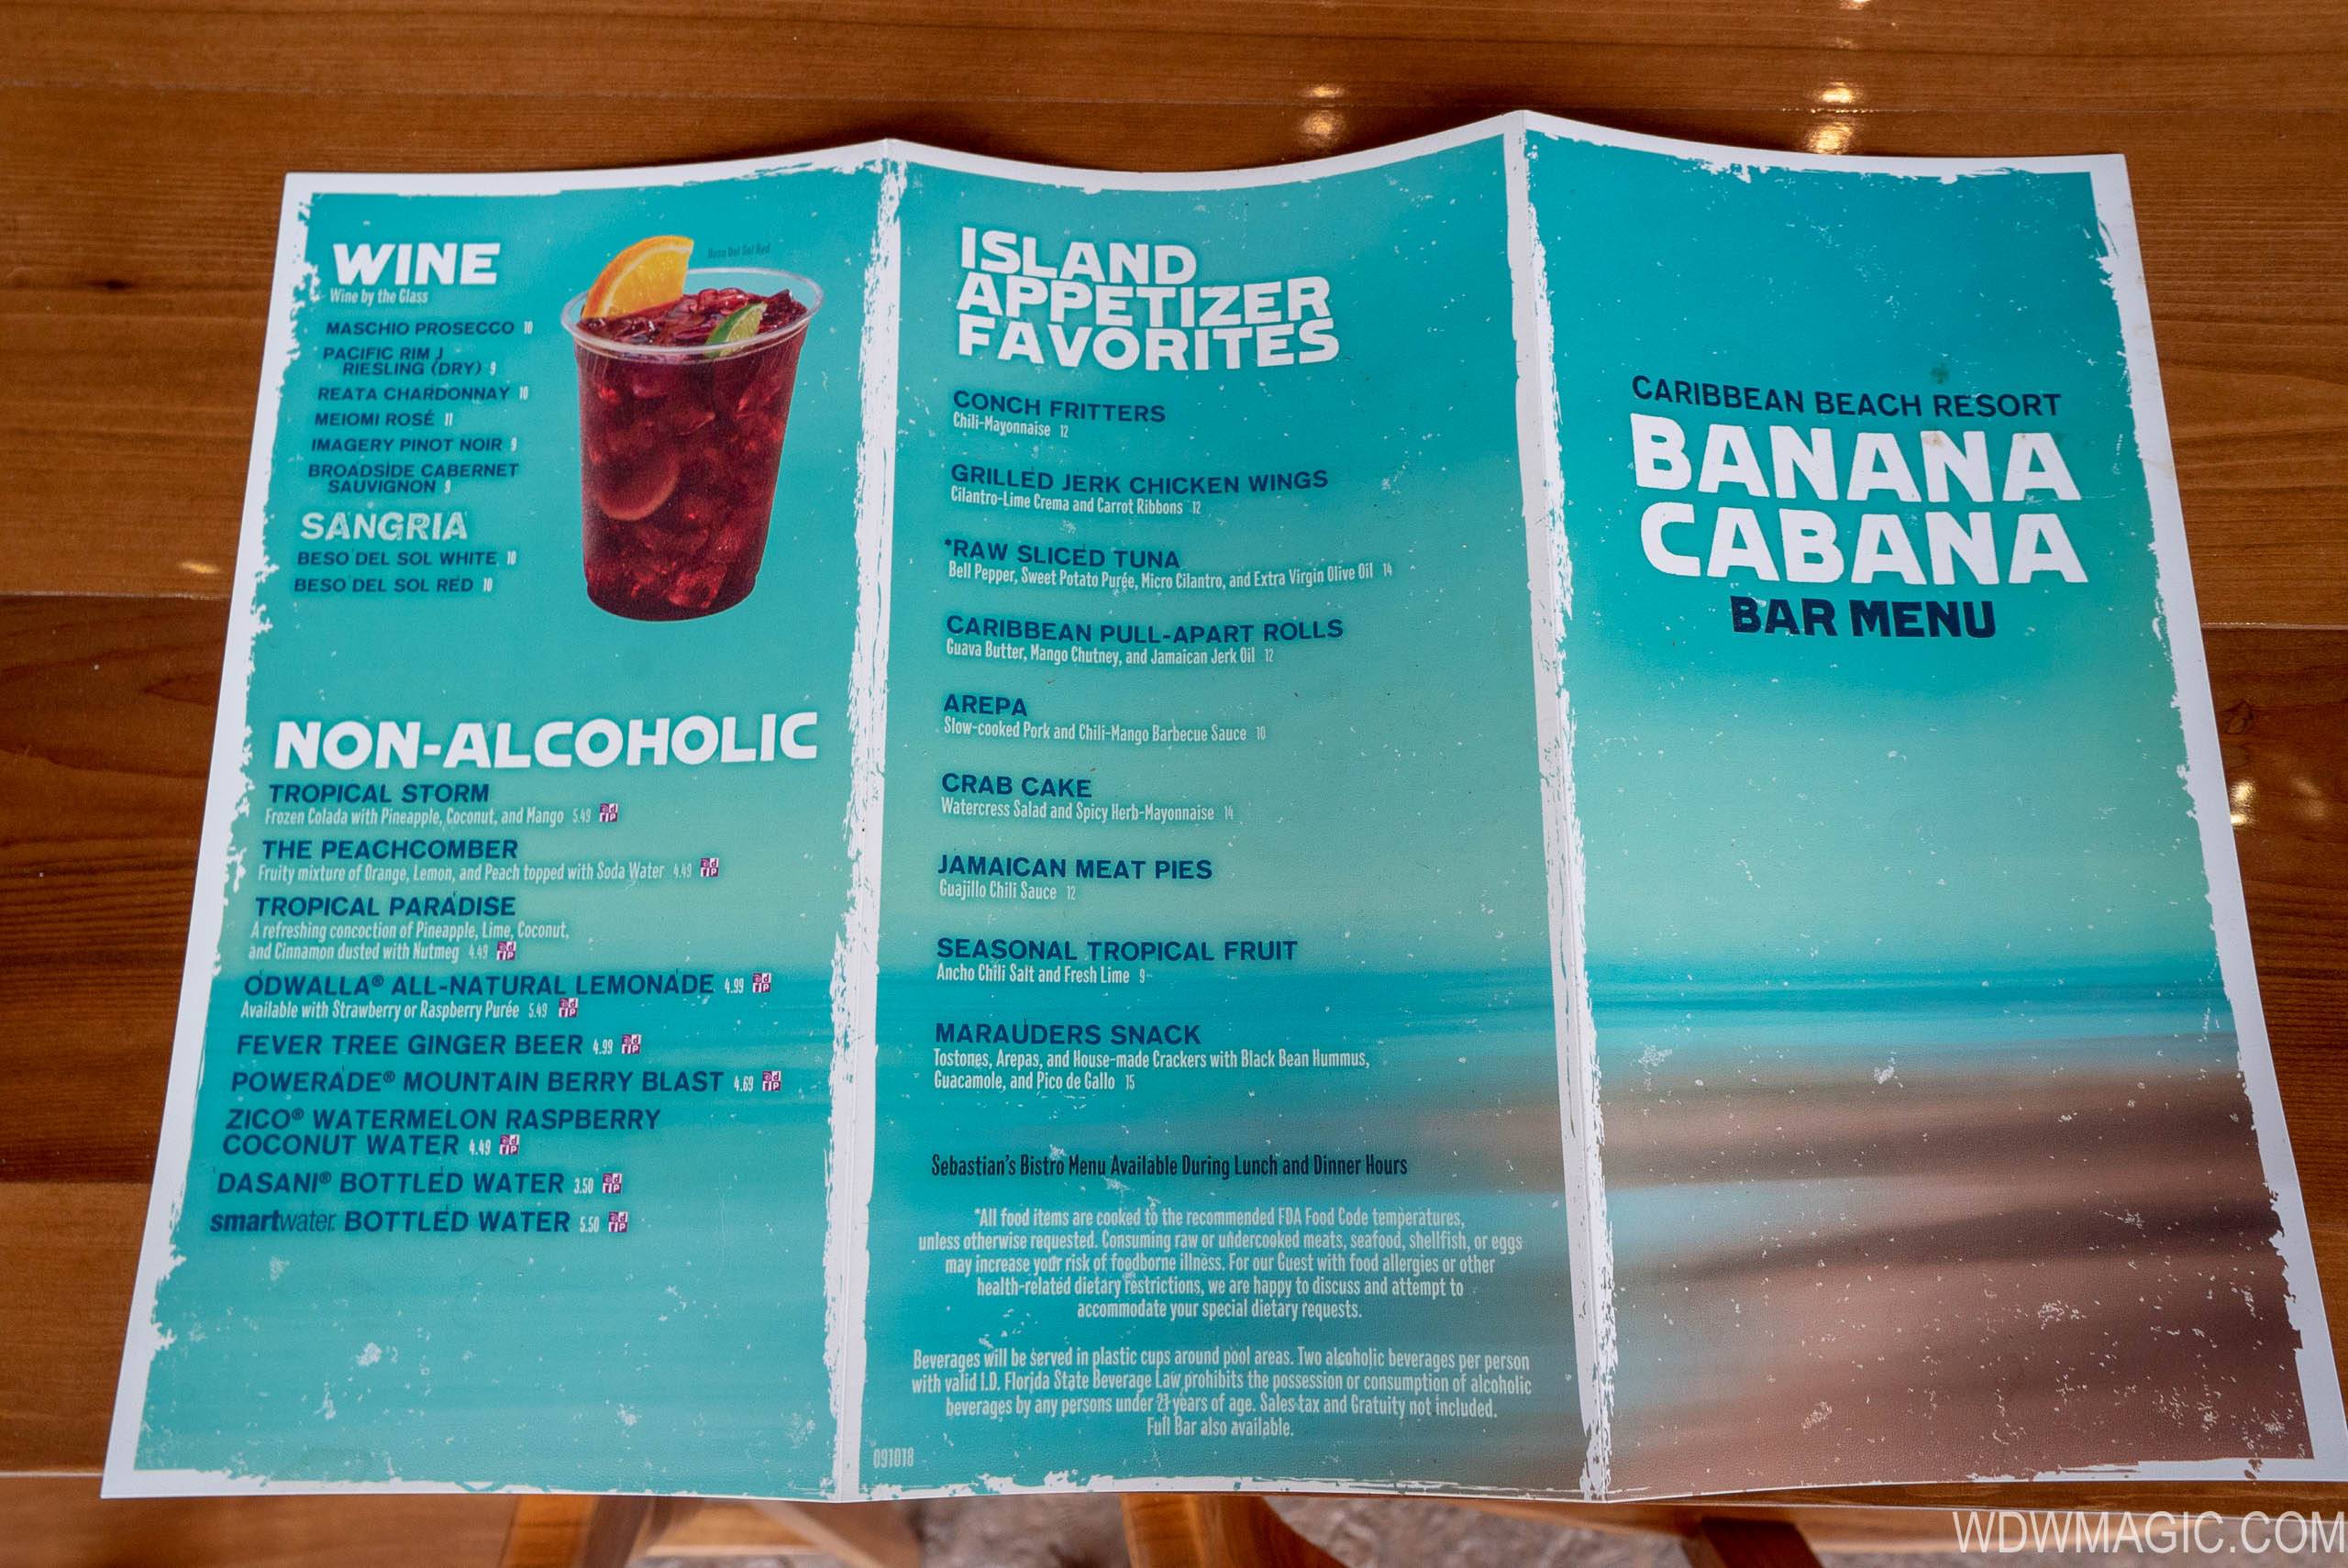 Banana cabana food menu